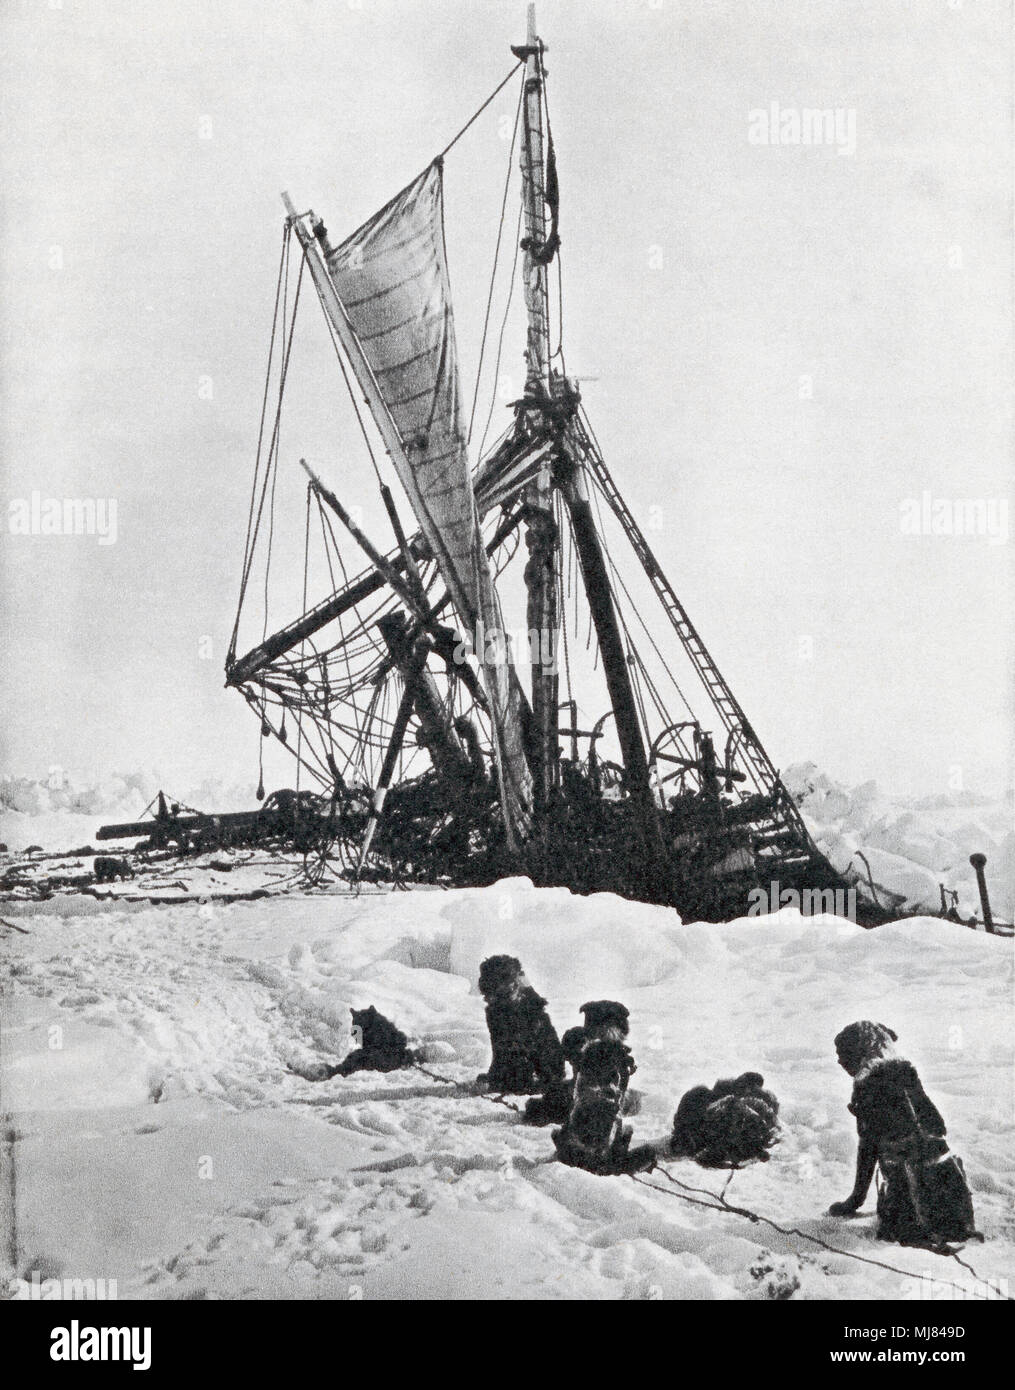 Le navire Endurance broyé par les glaces dans la mer de Weddell au cours de Shackleton's Antarctic Expedition, 1914 - 1916. Sir Ernest Henry Shackleton, 1874 - 1922. L'explorateur polaire français. De la explorateurs polaires, publié en 1943. Banque D'Images